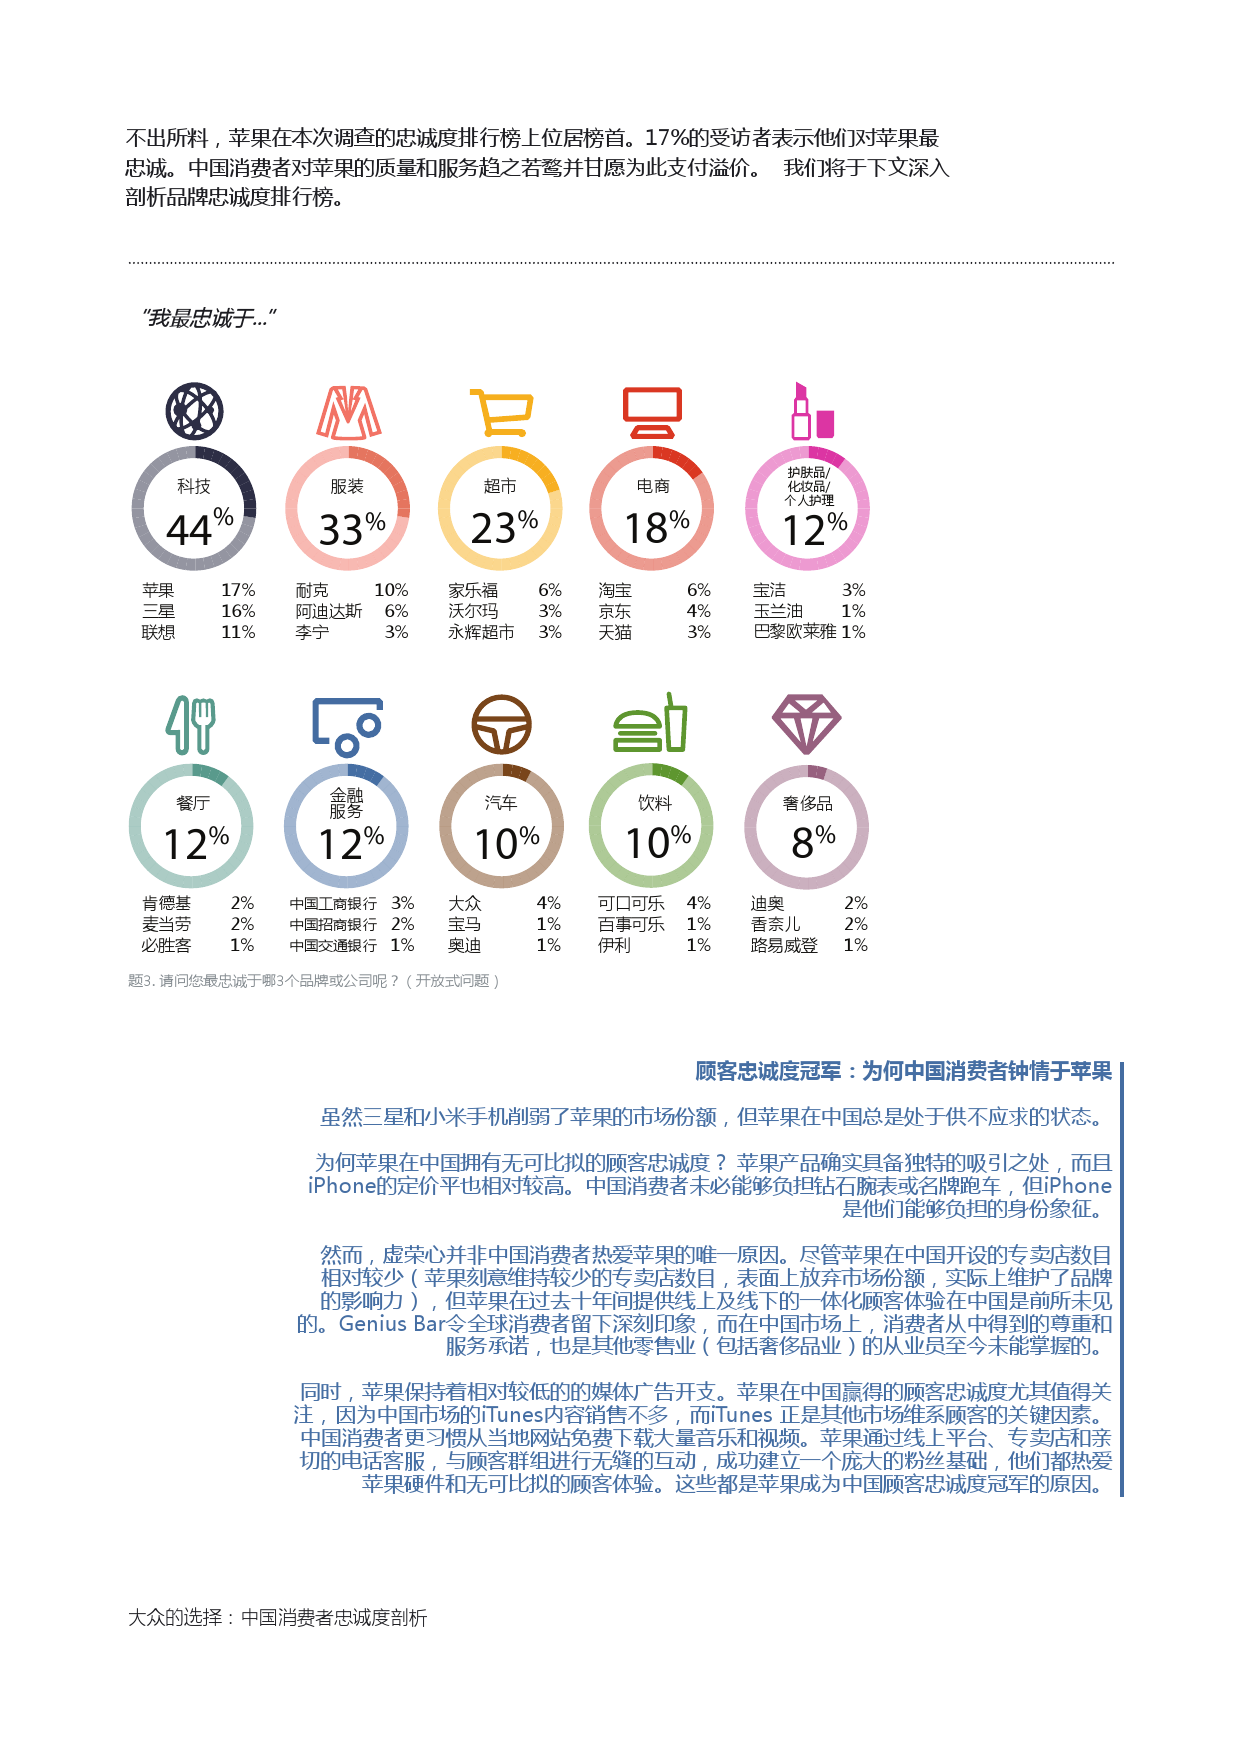 Epsilon_China_Loyalty_Study_report_CN_000006